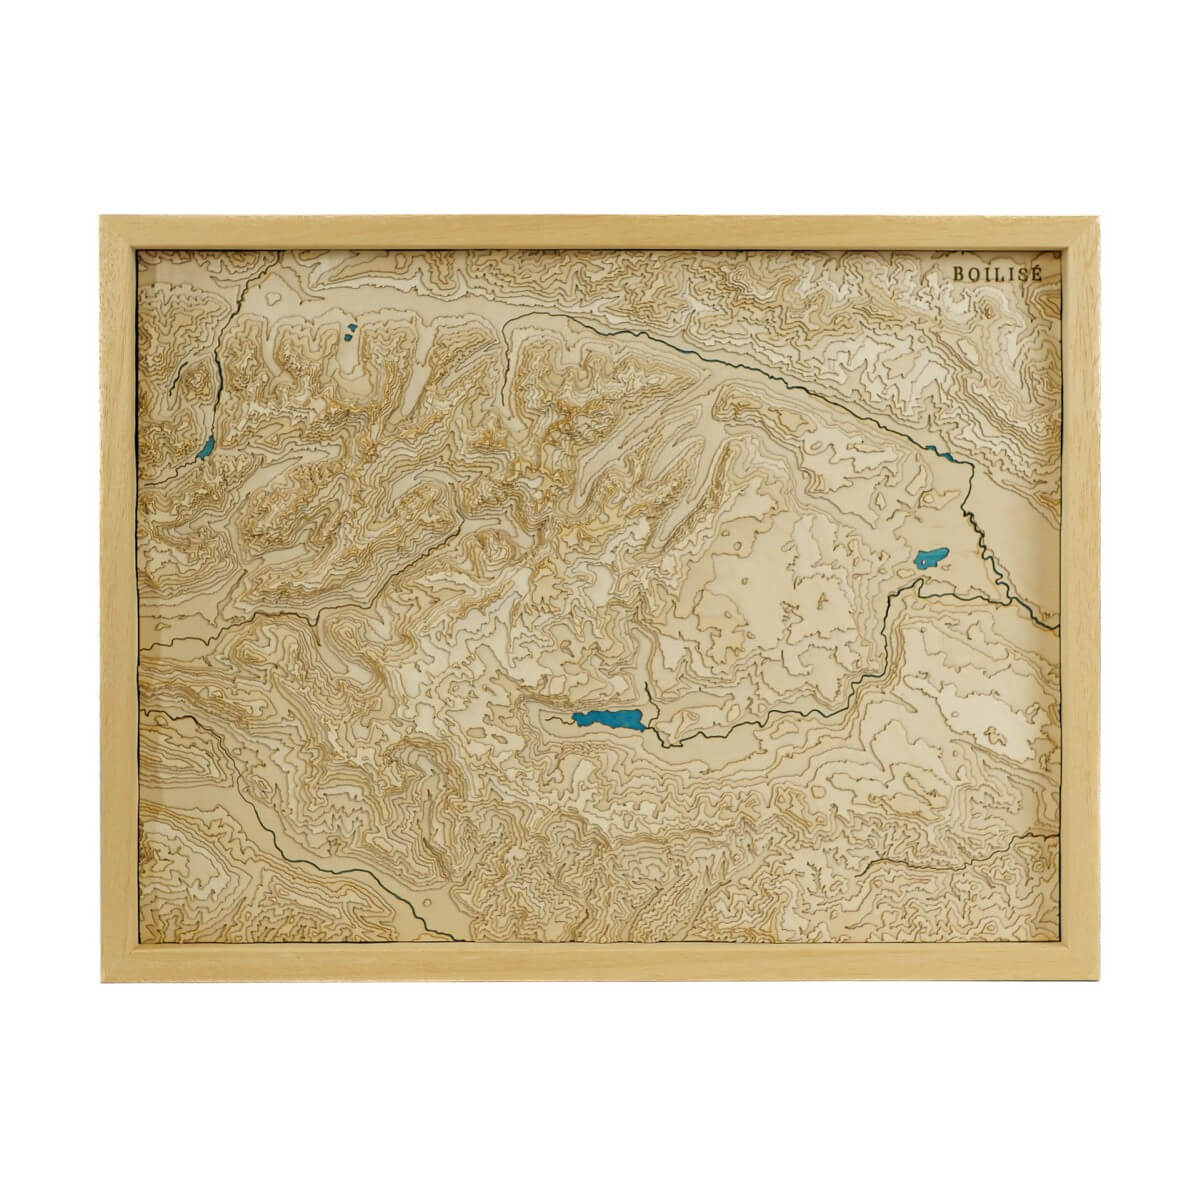 Notre carte topographique en bois et en relief des Alpes Juliennes vous permet de découvrir les Alpes Juliennes comme jamais auparavant